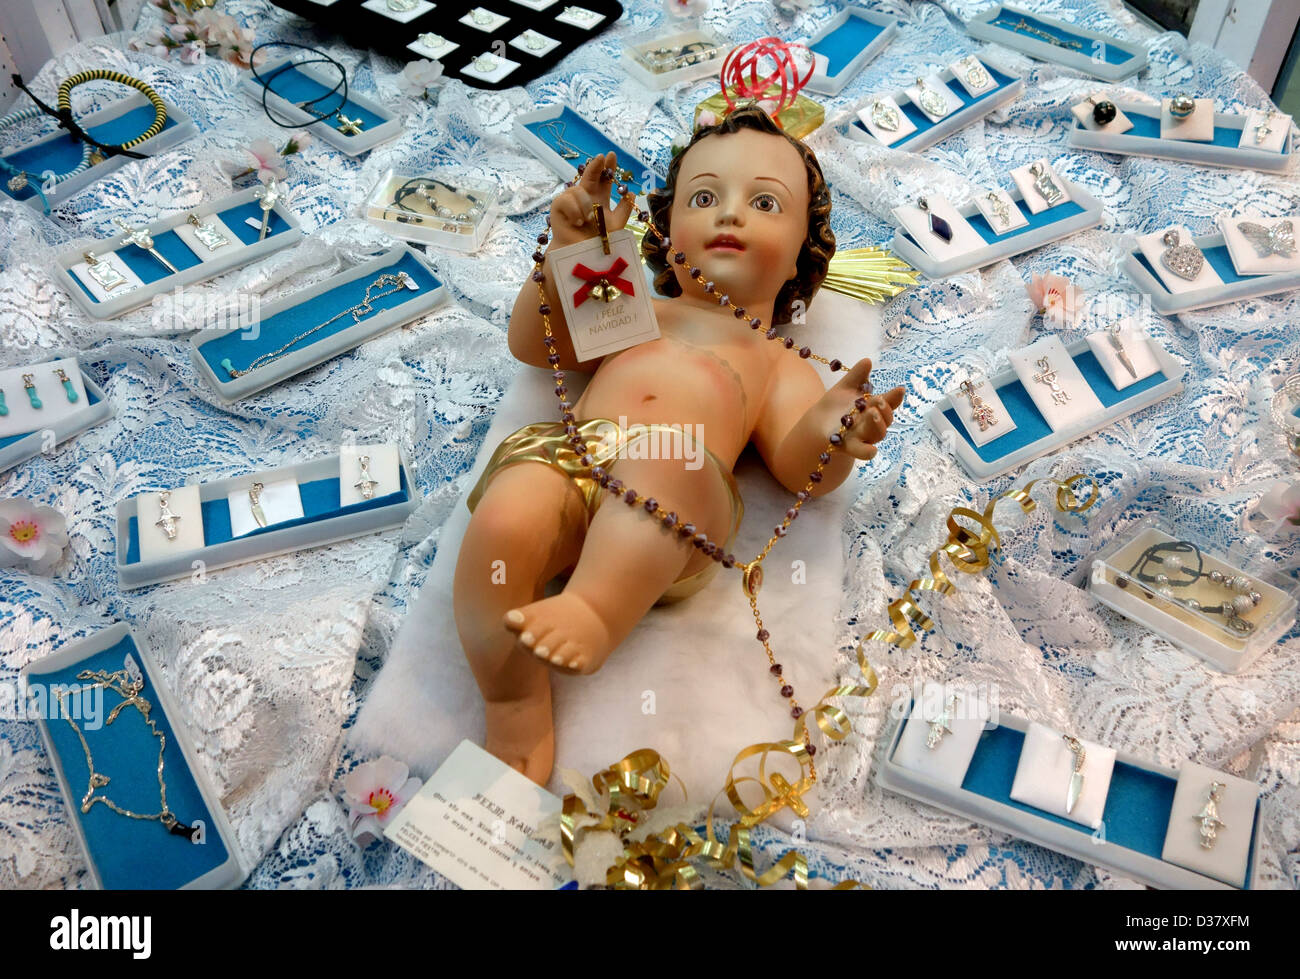 Abbildung des Jesuskindes in religiöse Artefakte-Shop, Santa Cruz De Tenerife, Kanarische Inseln, Spanien Stockfoto